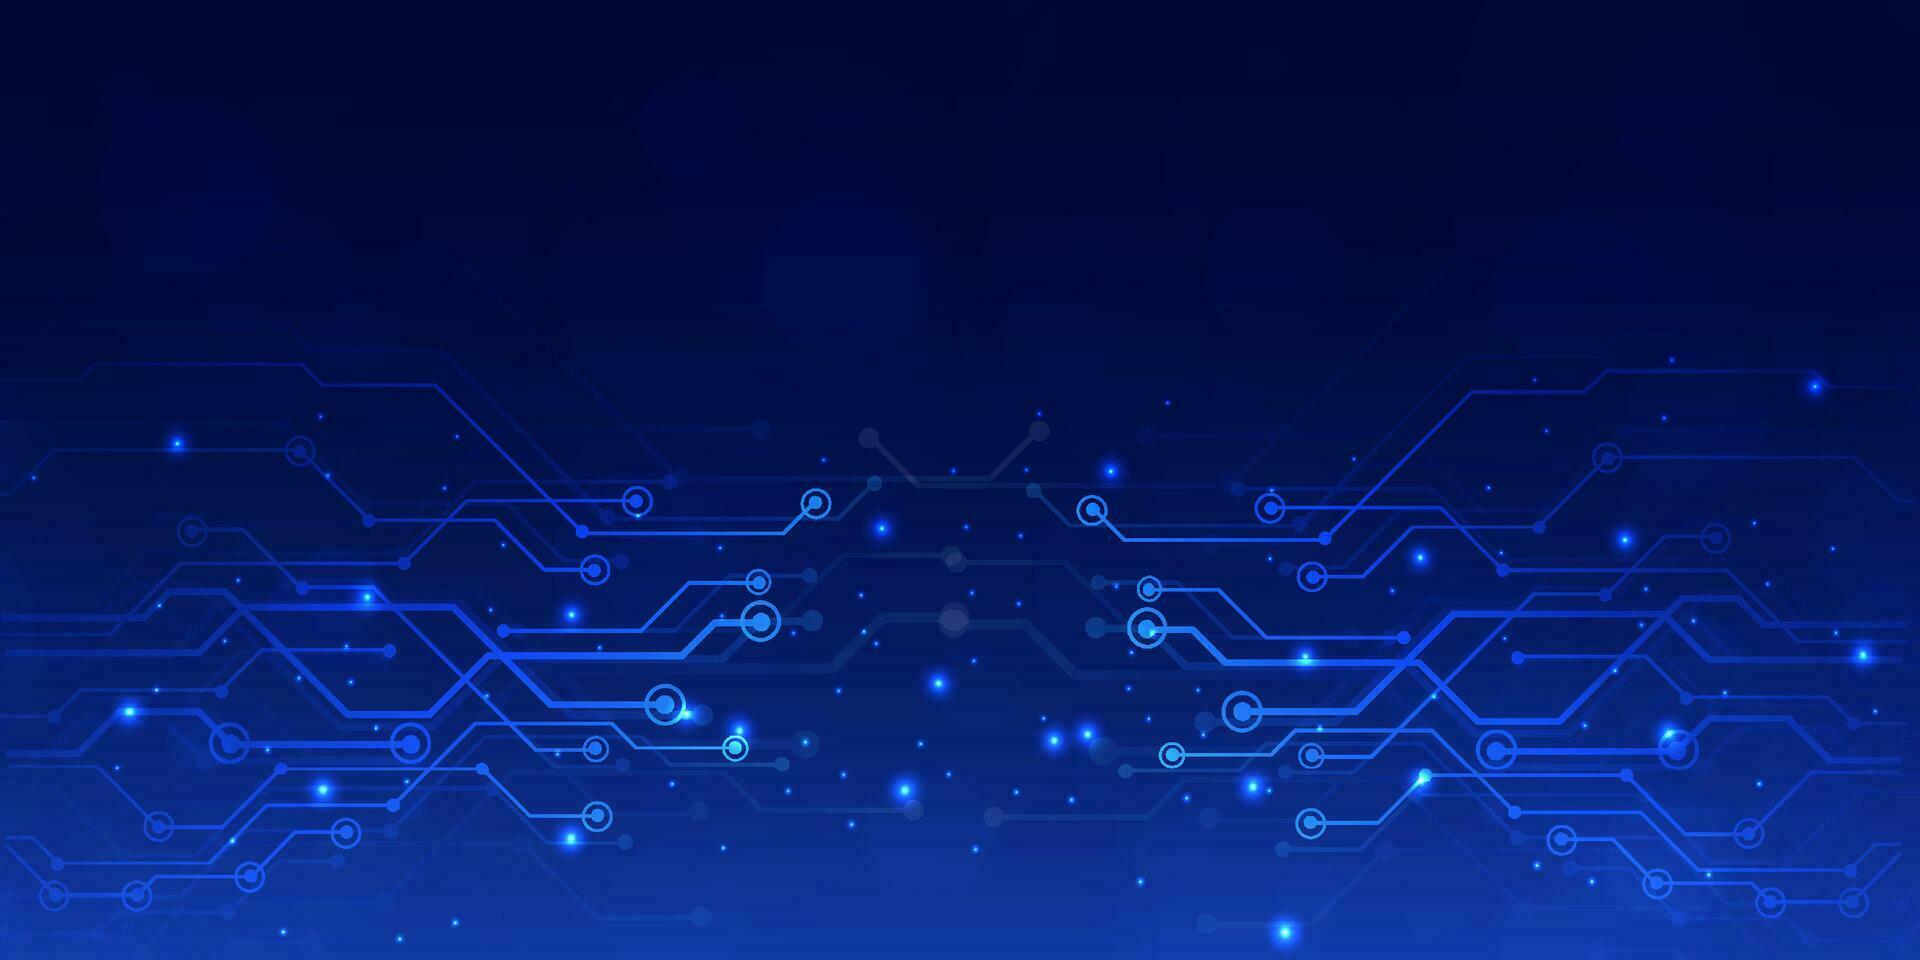 abstract digitaal technologie futuristische groot gegevens blauw achtergrond, cyber nano informatie communicatie, innovatie toekomst tech gegevens, internet netwerk verbinding, stroomkring bord lijn punt illustratie vector